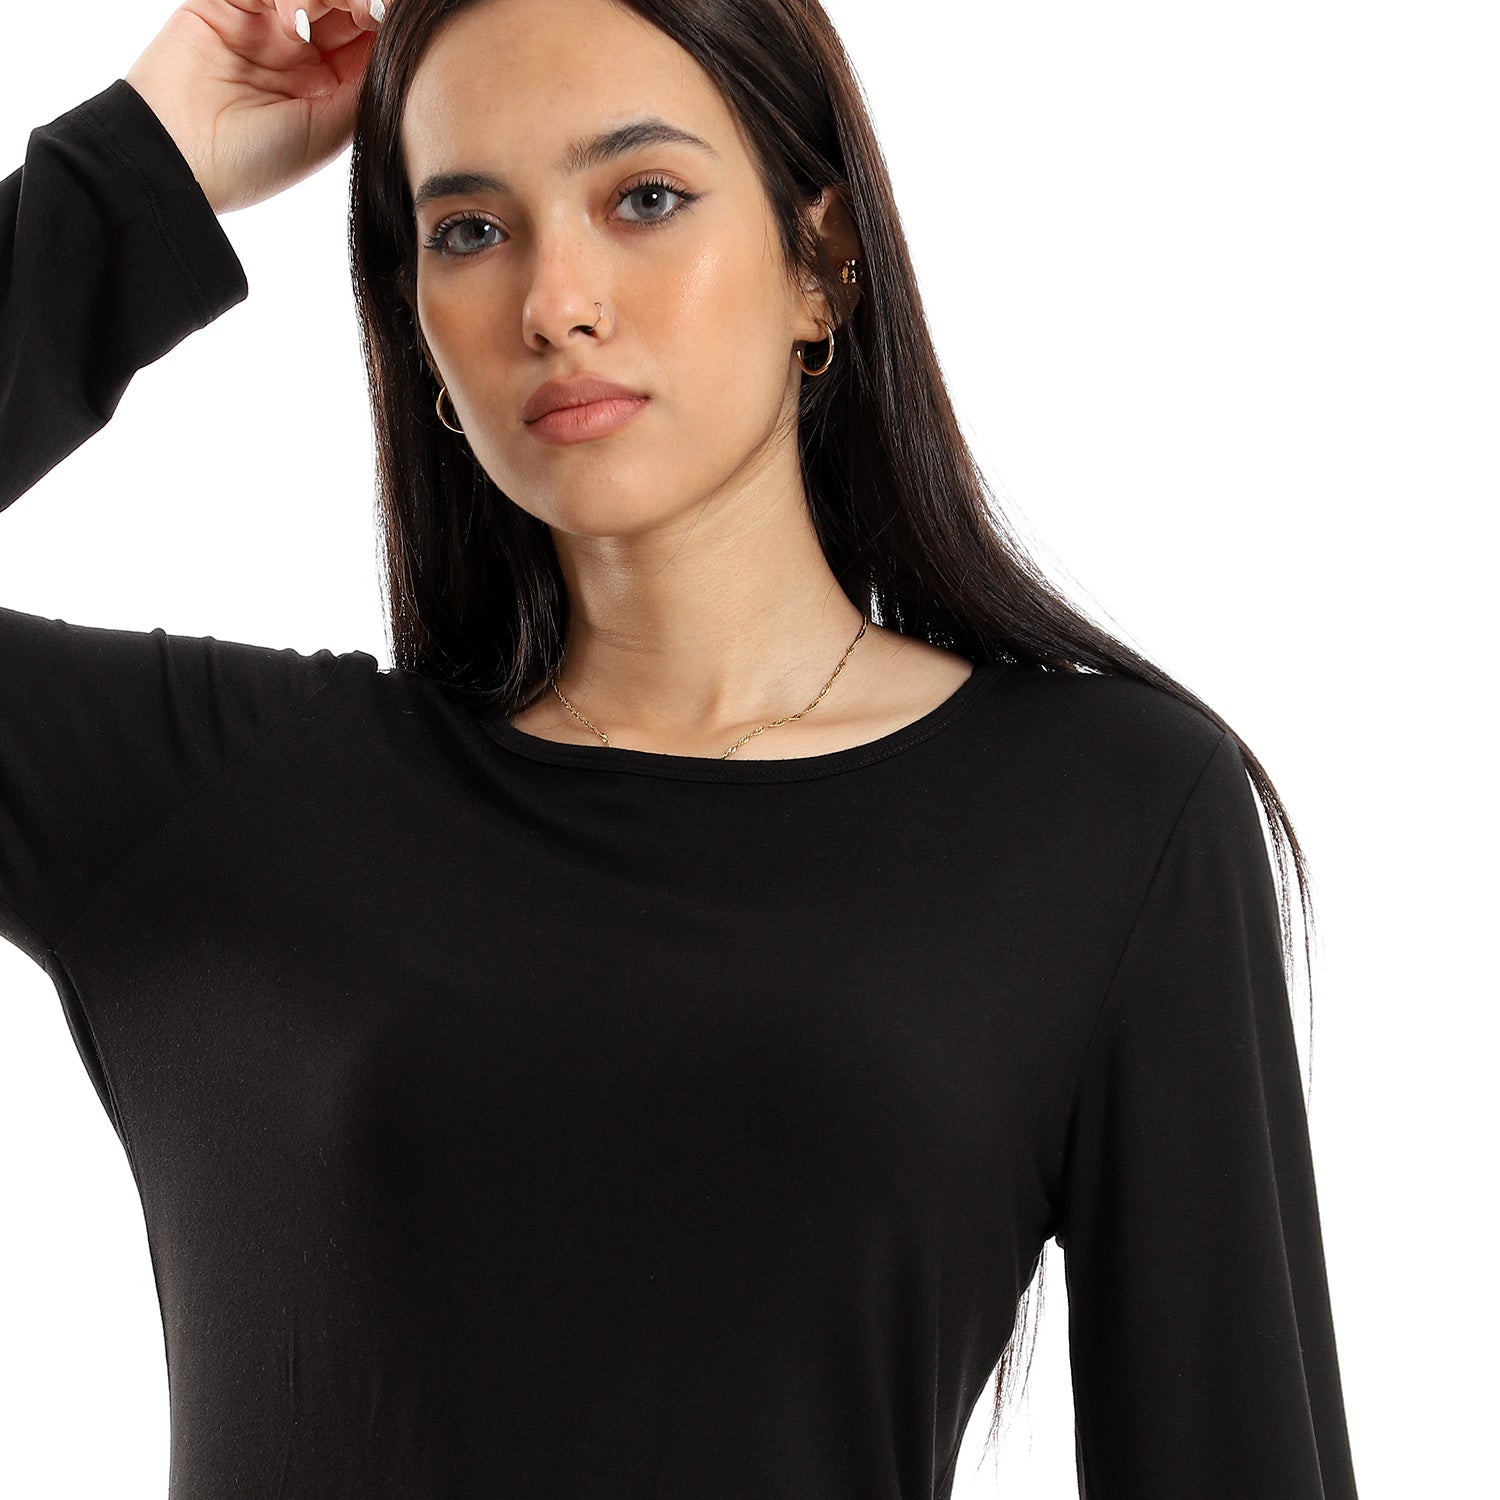 Women Basic Shirt, Round Neck, Long Sleeve - Black